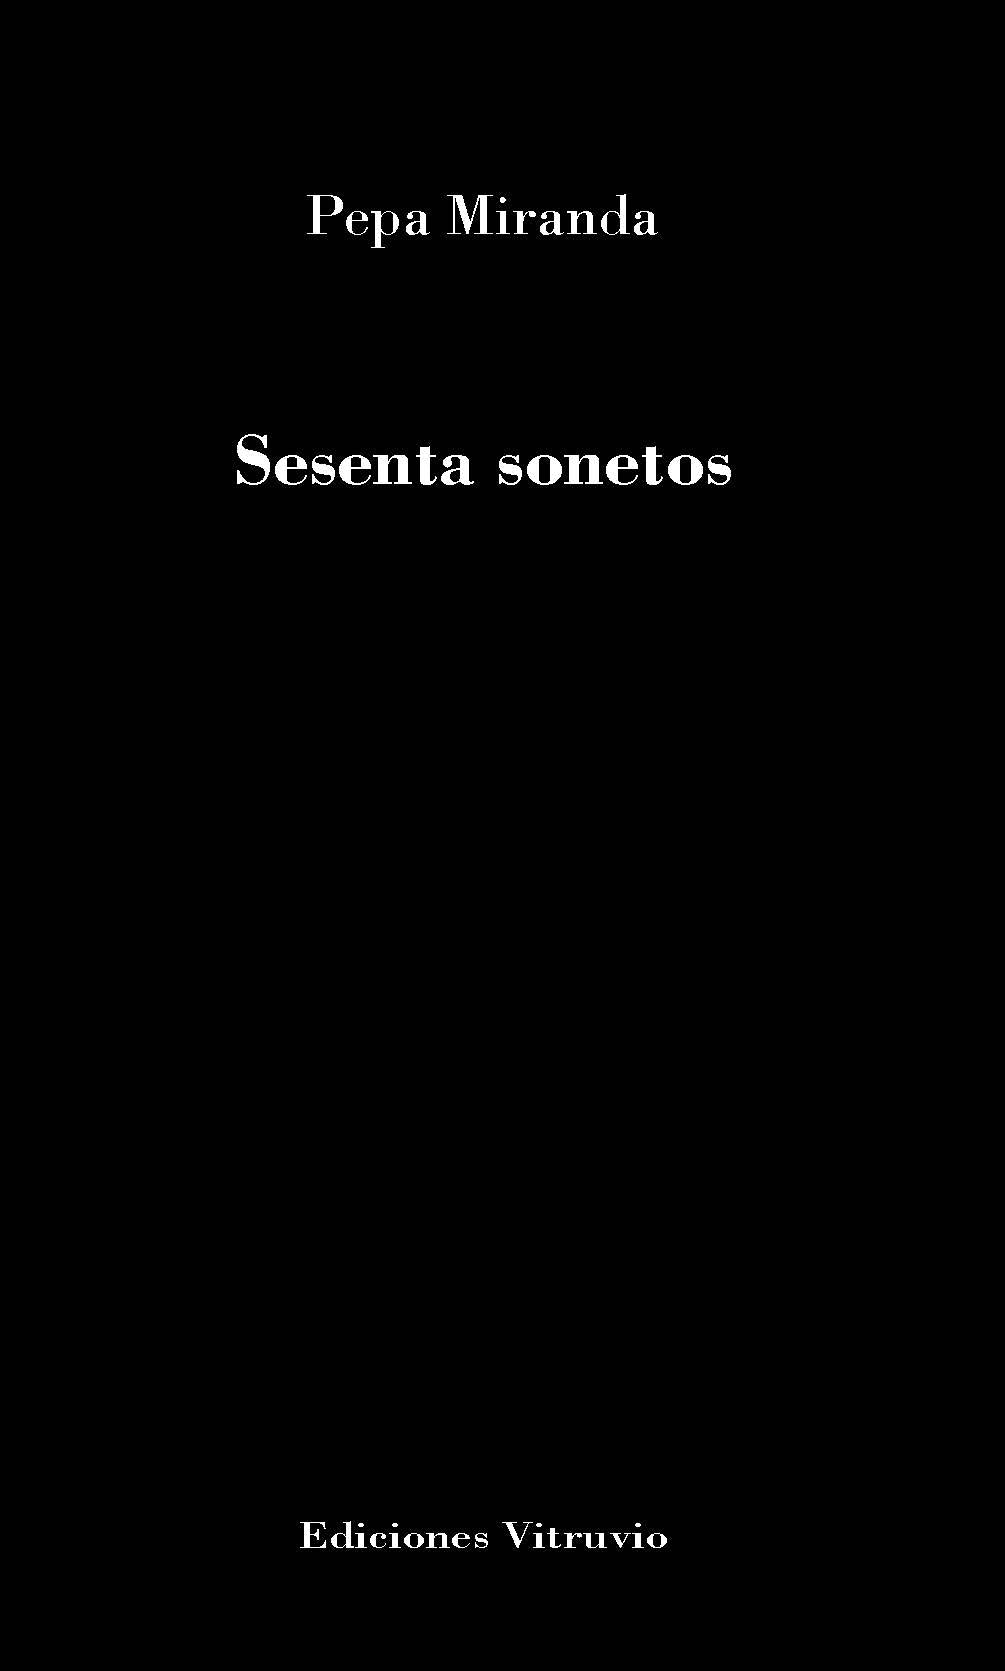 Sesenta sonetos, de Pepa Miranda